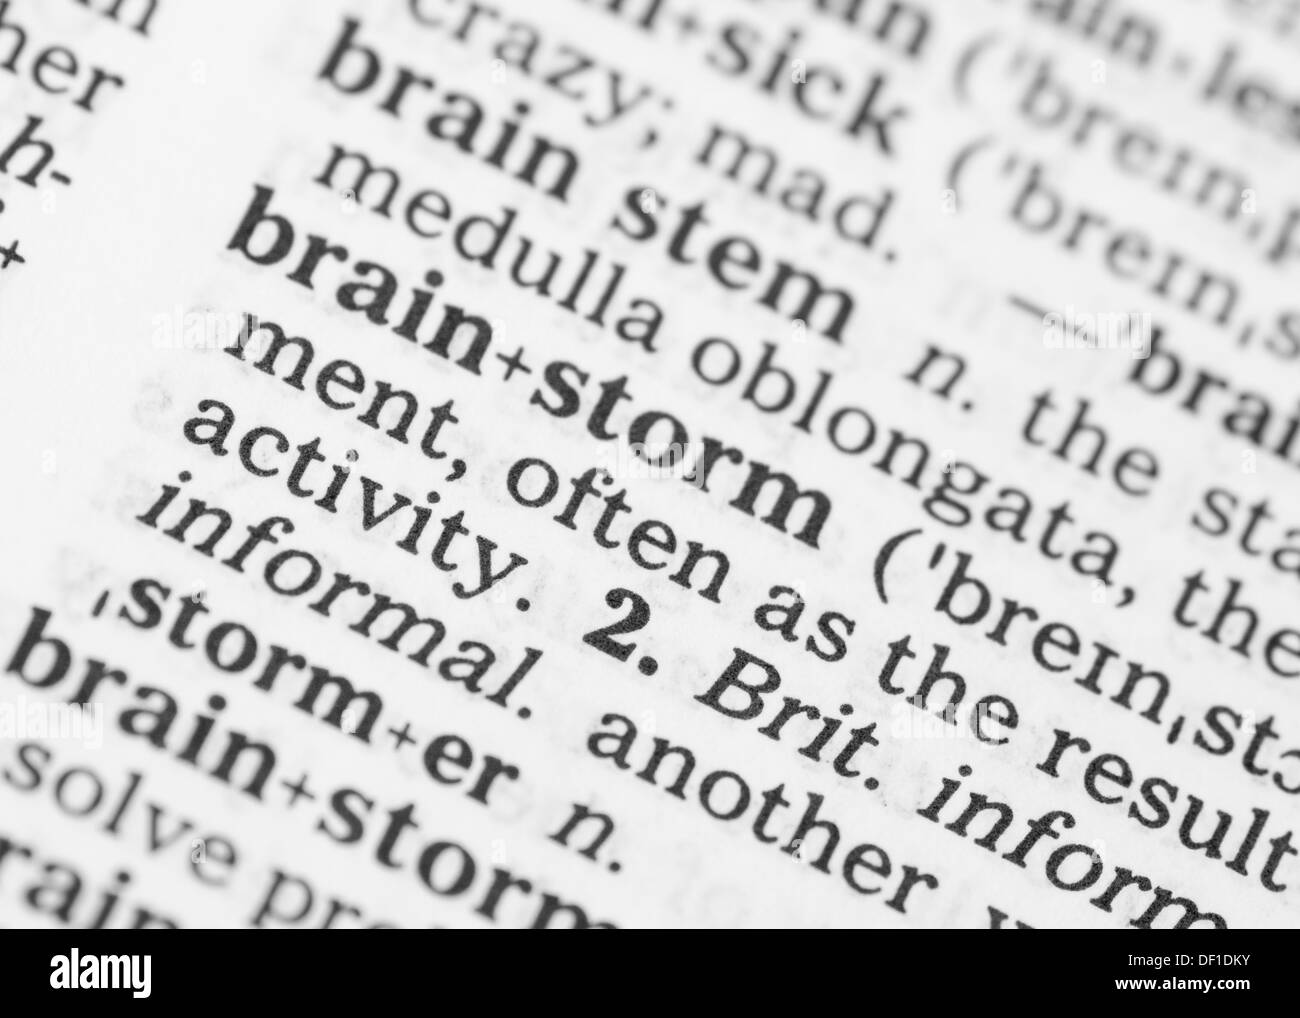 Makro-Bild der Wörterbuch-Definition des Wortes Brainstorming Stockfoto